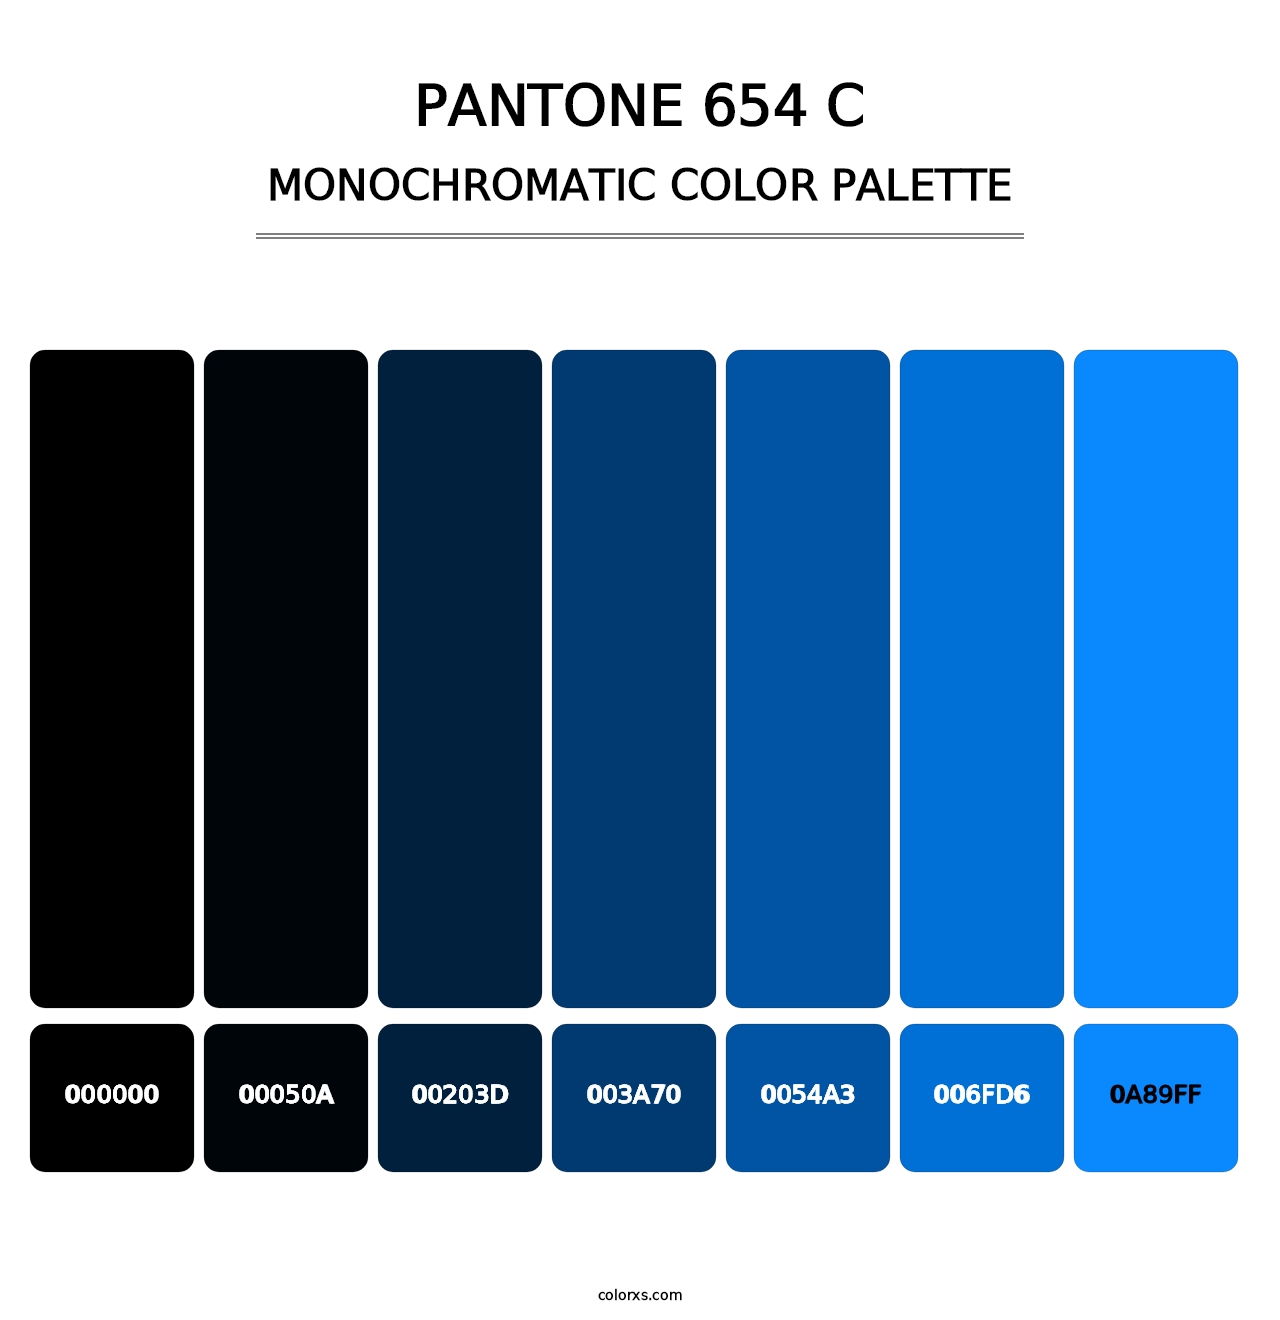 PANTONE 654 C - Monochromatic Color Palette